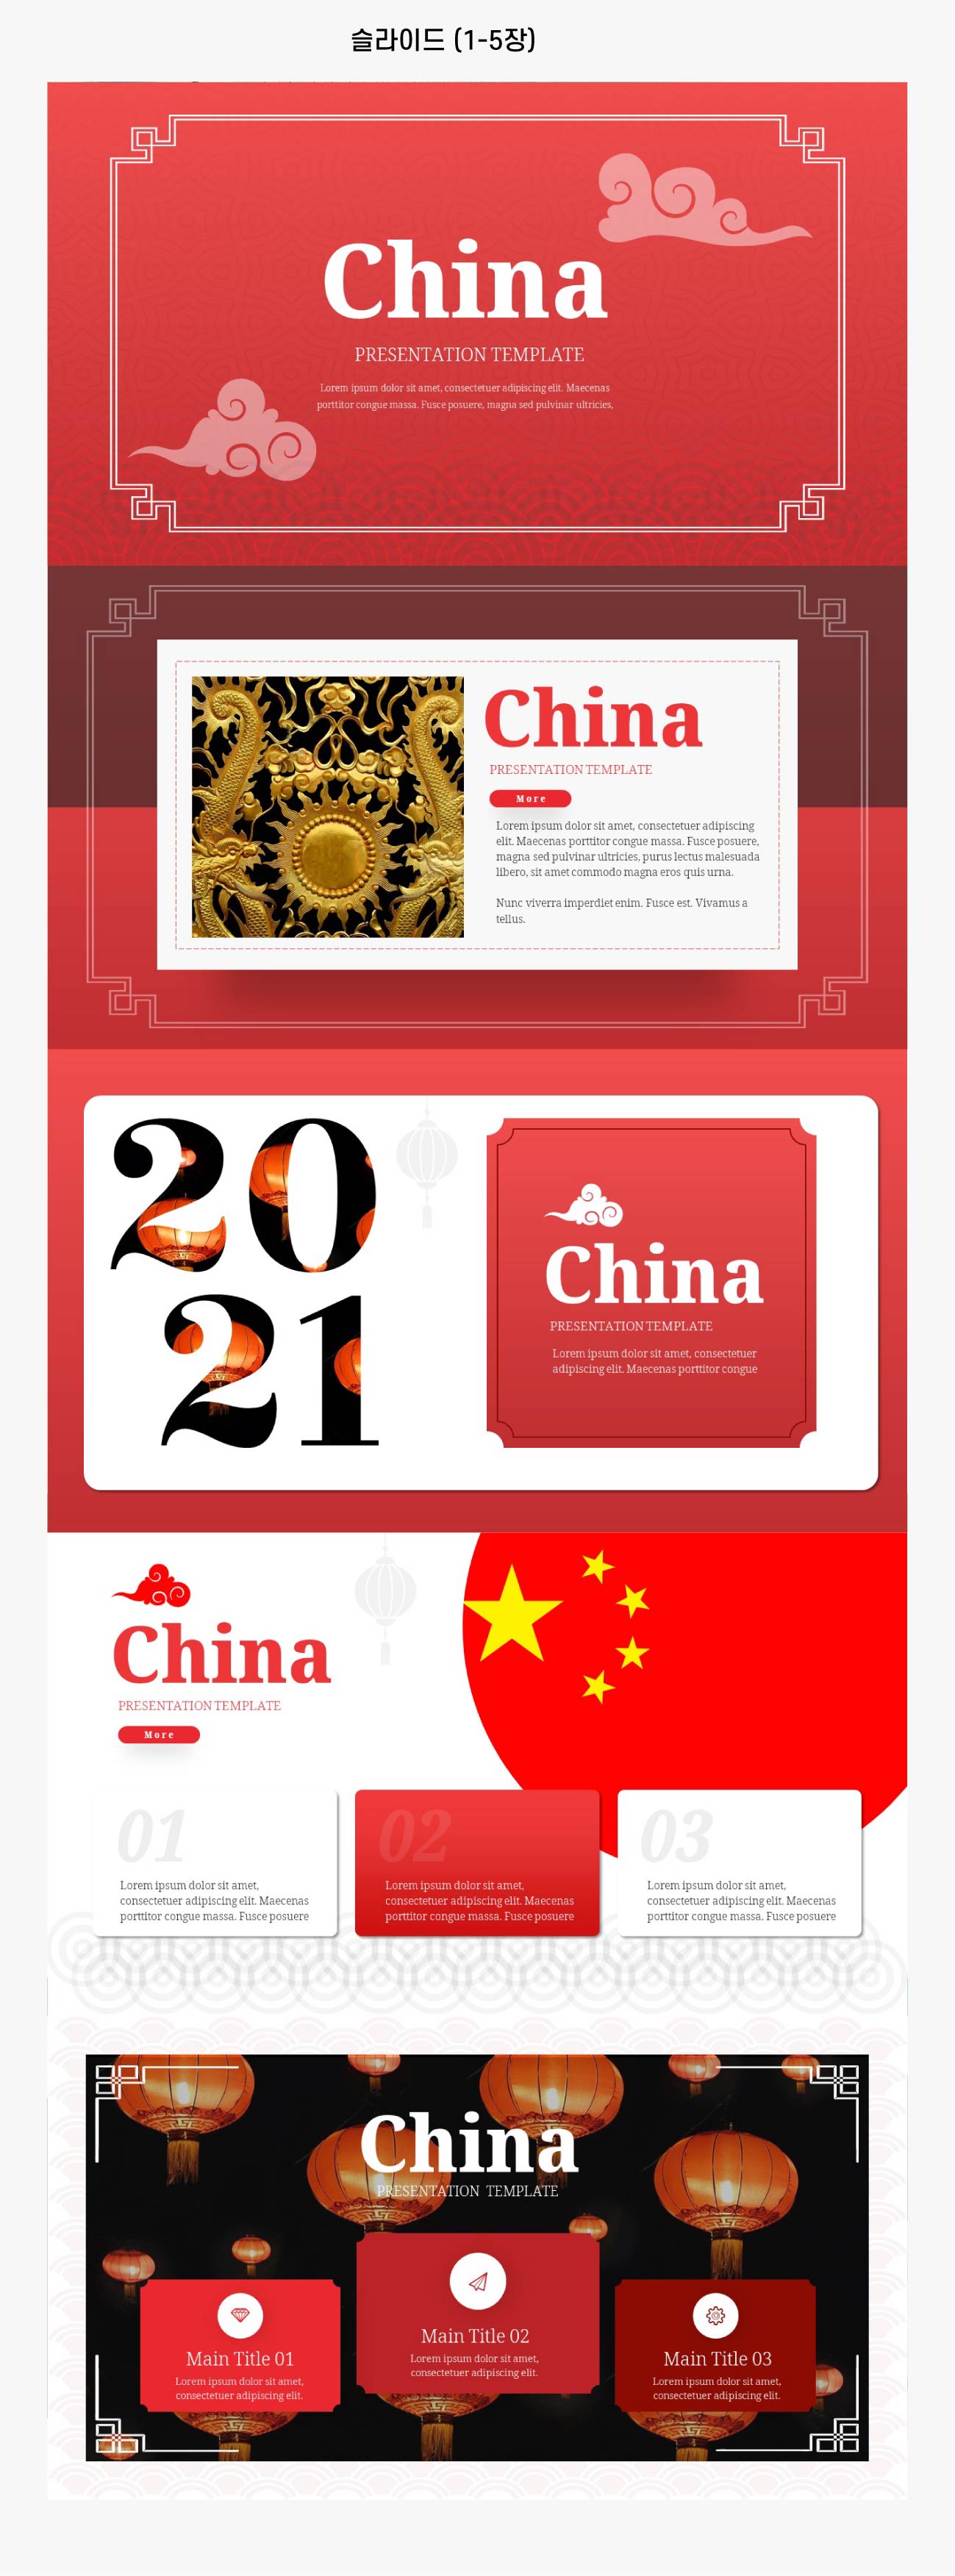 중국-피피티-템플릿-슬라이드-1